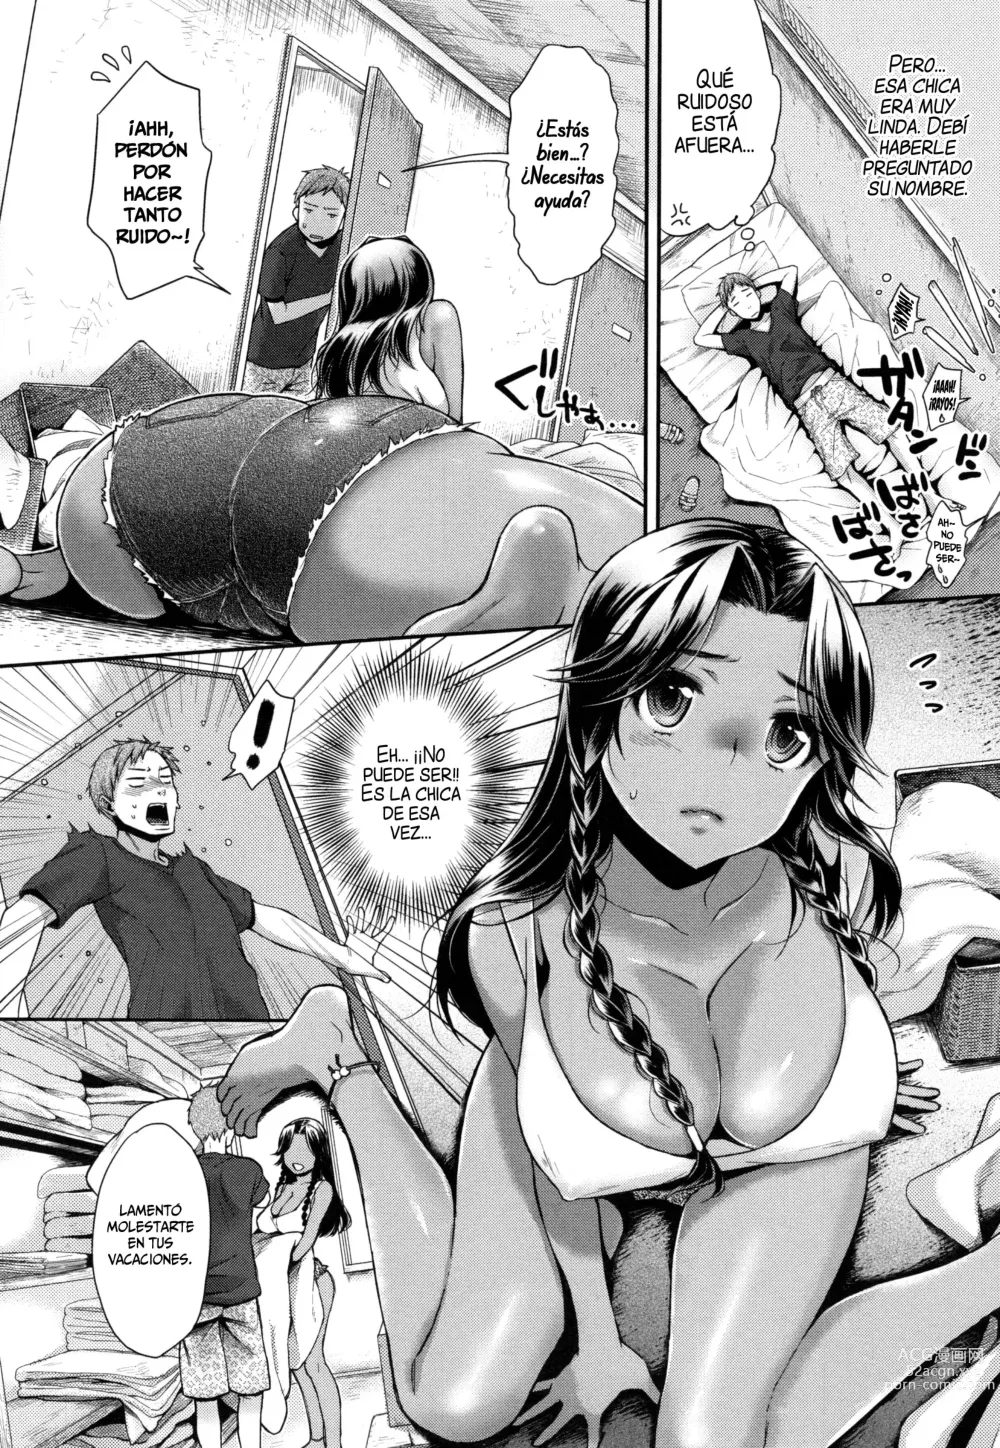 Page 4 of manga Una Historia de Mar y Pechos